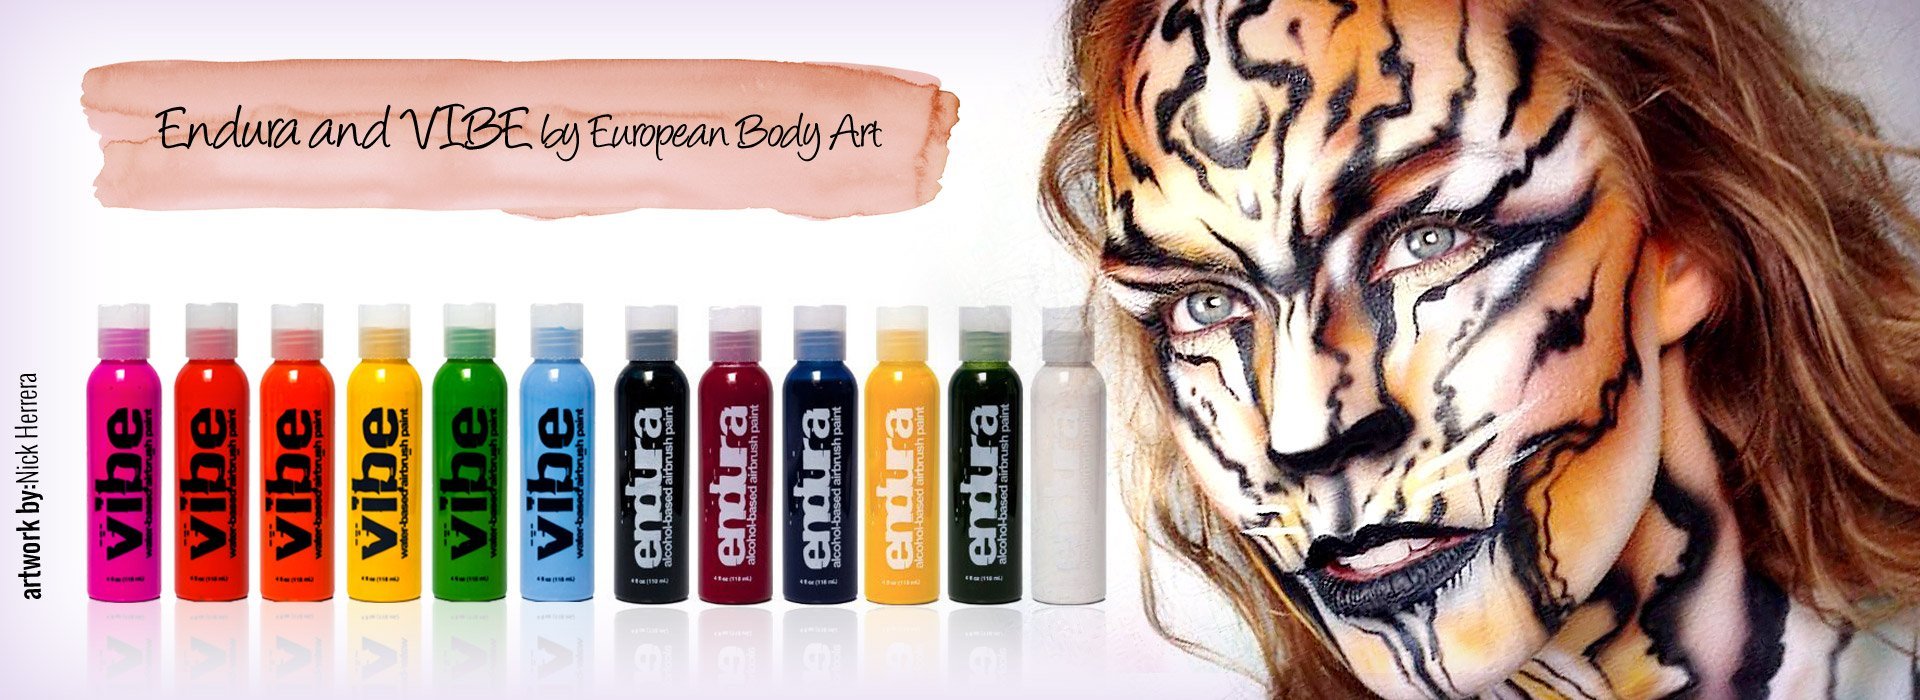 European Body Art Airbrush Inks | Silly Farm Supplies